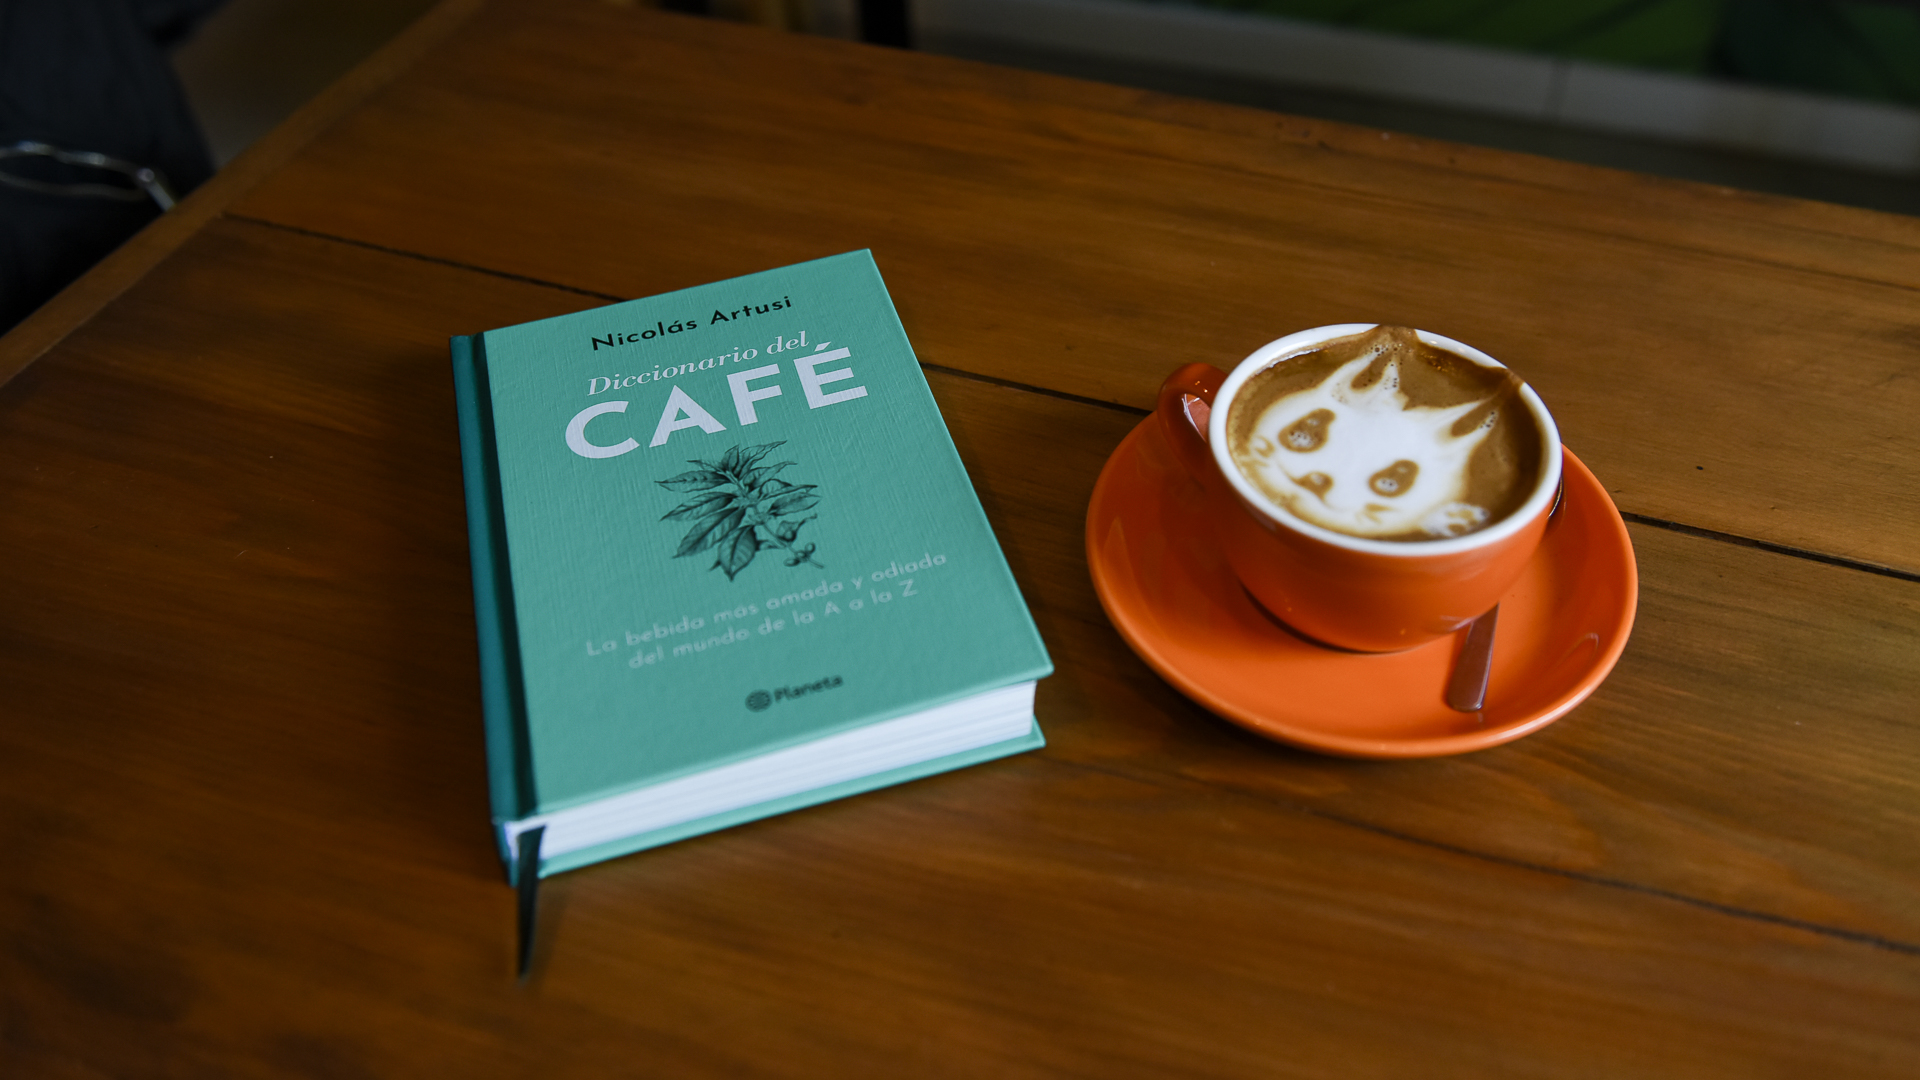 Latte art, una de las definiciones del "Diccionario de café", de Artusi. 